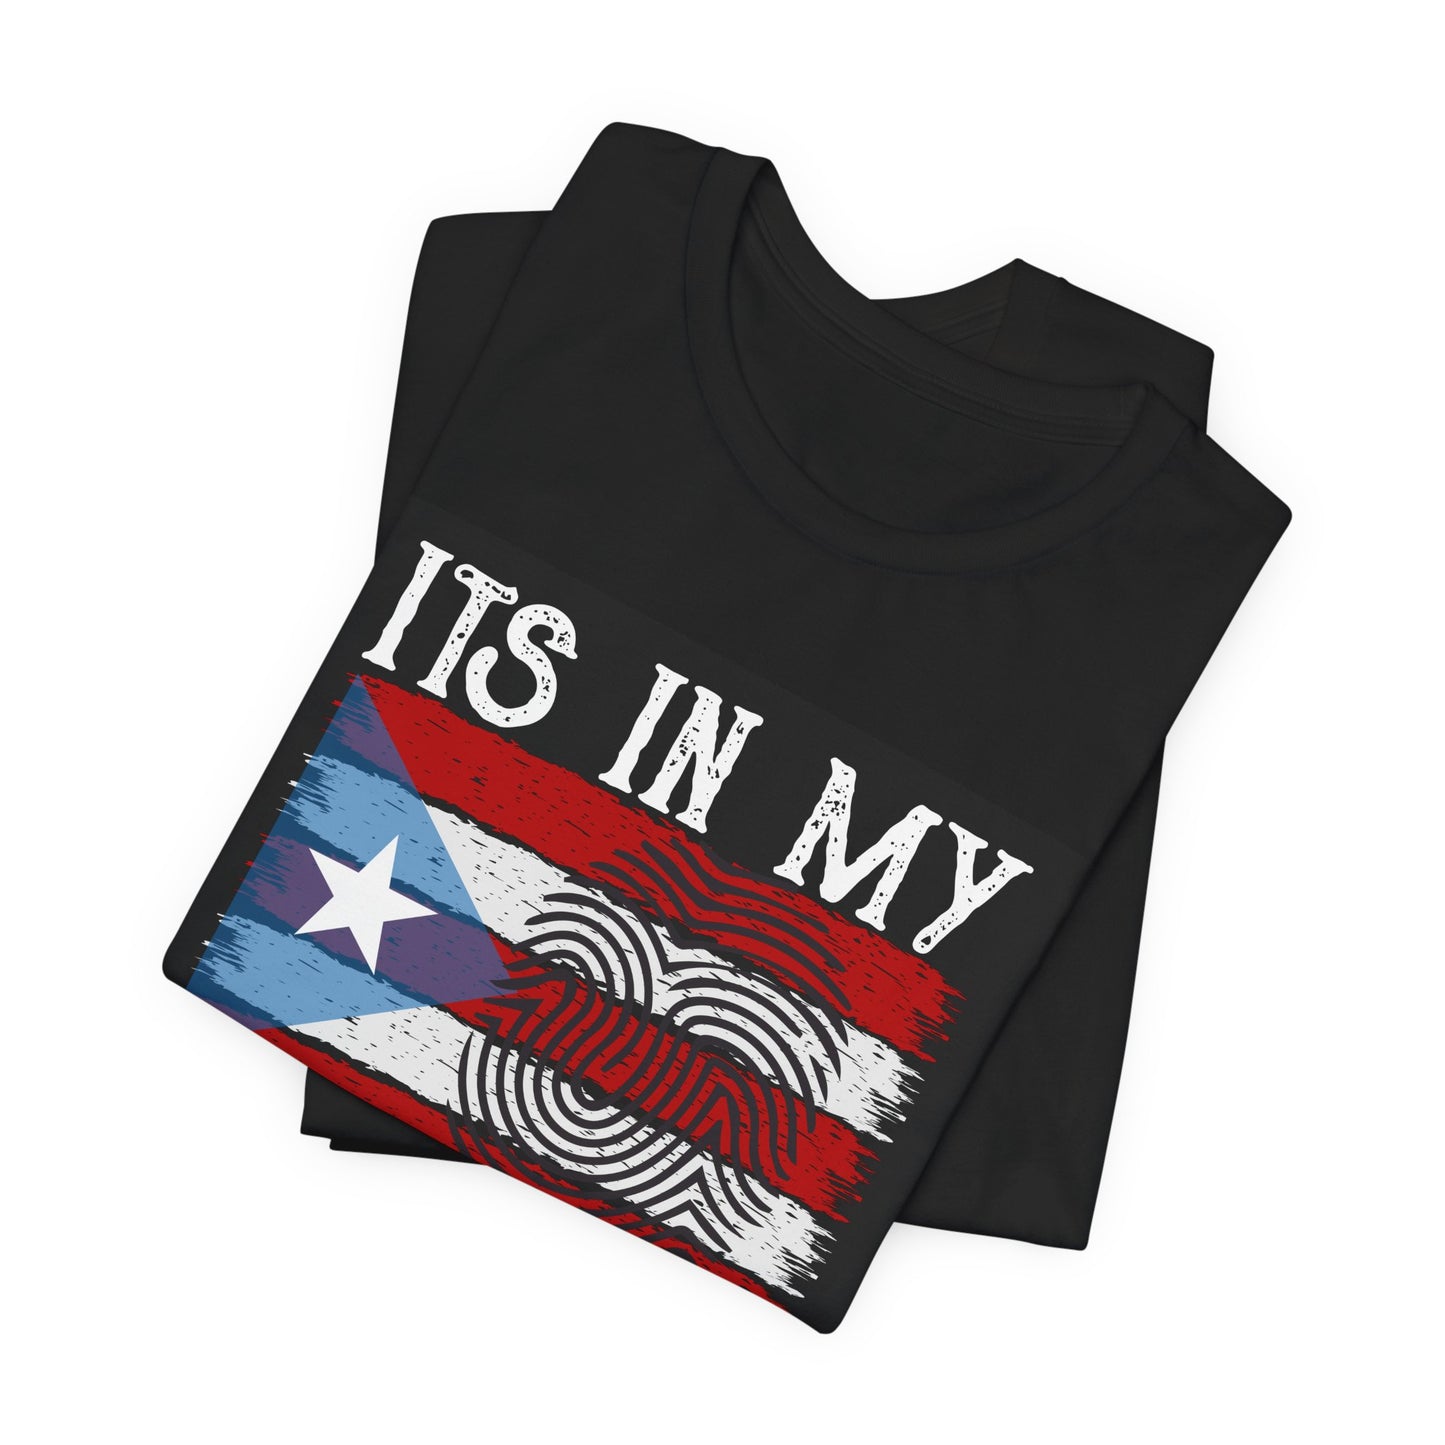 IT'S IN MY DNA Unisex Puerto Rico Boricua Shirt 4everBoricua™️